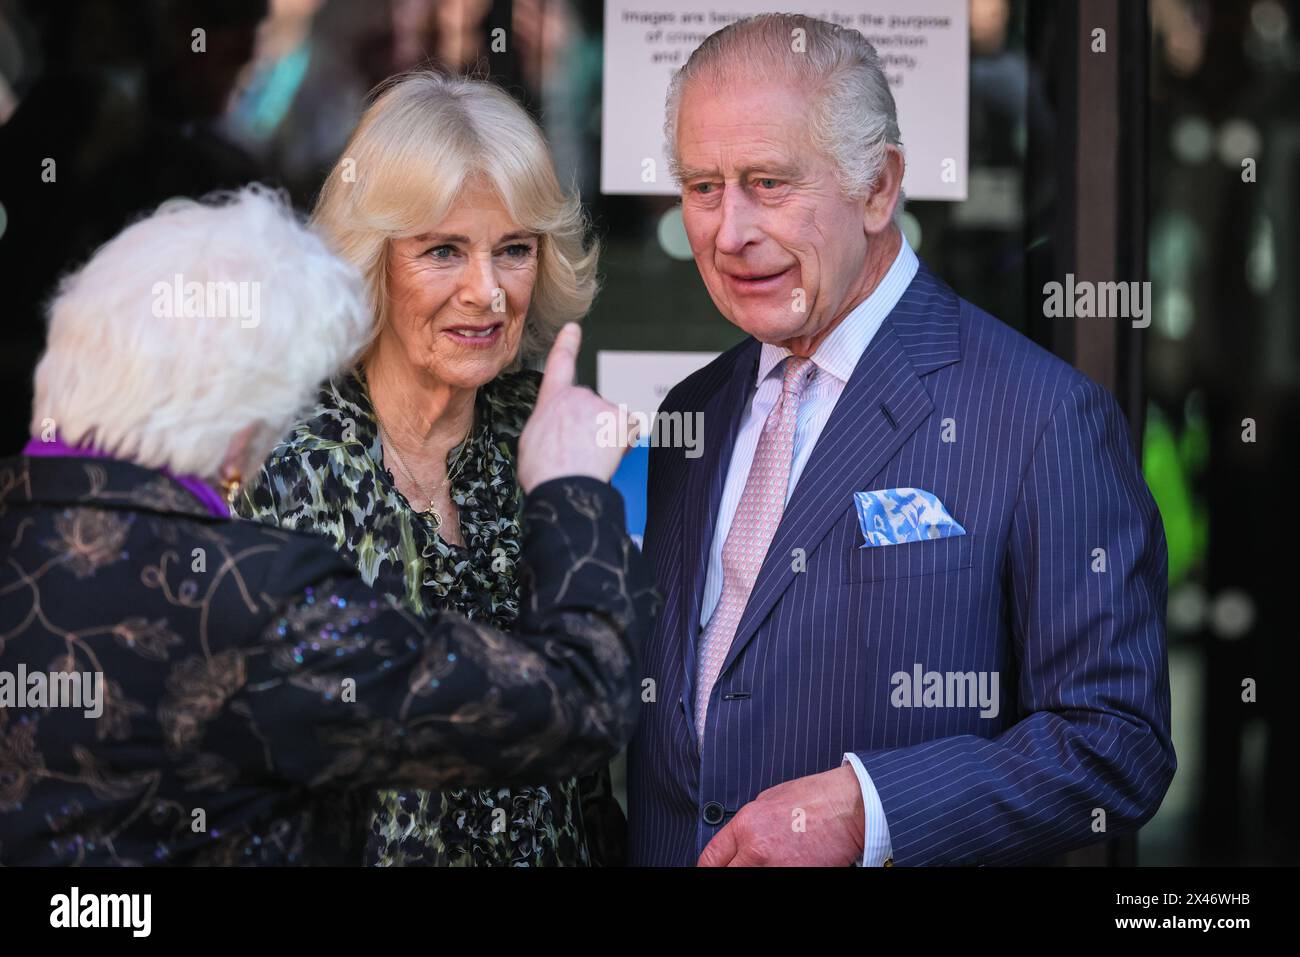 Londres, Royaume-Uni. 30 avril 2024. Le roi Charles III et la reine Camilla visitent le Centre de cancérologie UCH Macmillan à Londres. C'est le premier engagement public dans une démarche du roi pour retourner au service public après son diagnostic de cancer. Crédit : Imageplotter/Alamy Live News Banque D'Images